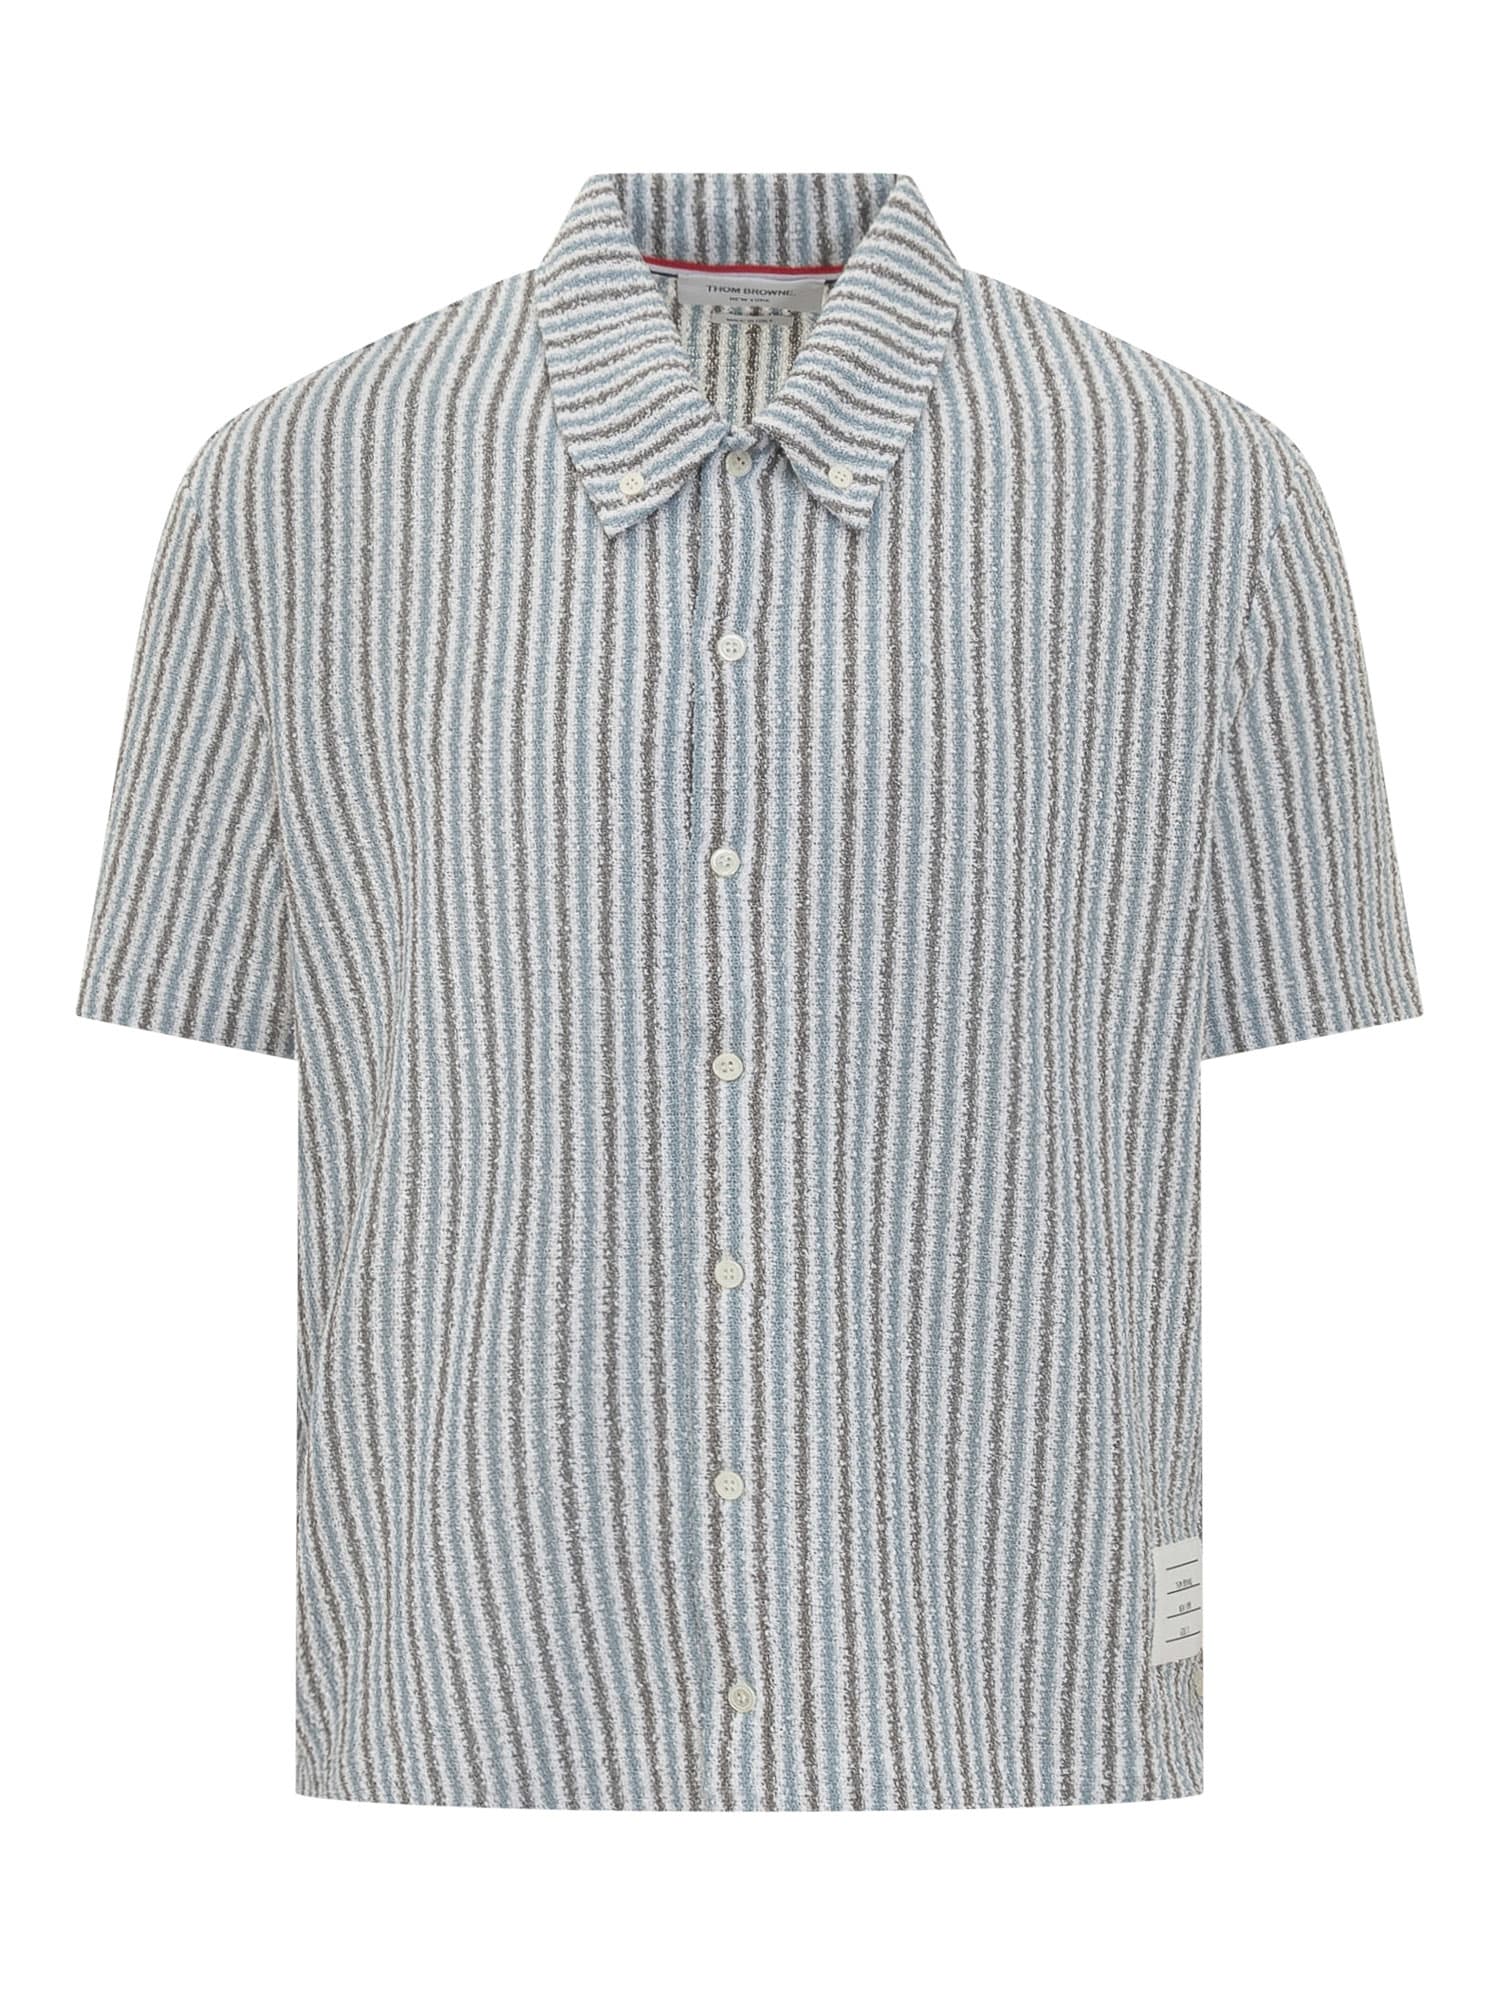 Thom Browne Rwb Striped Shirt In Seasonal Multi